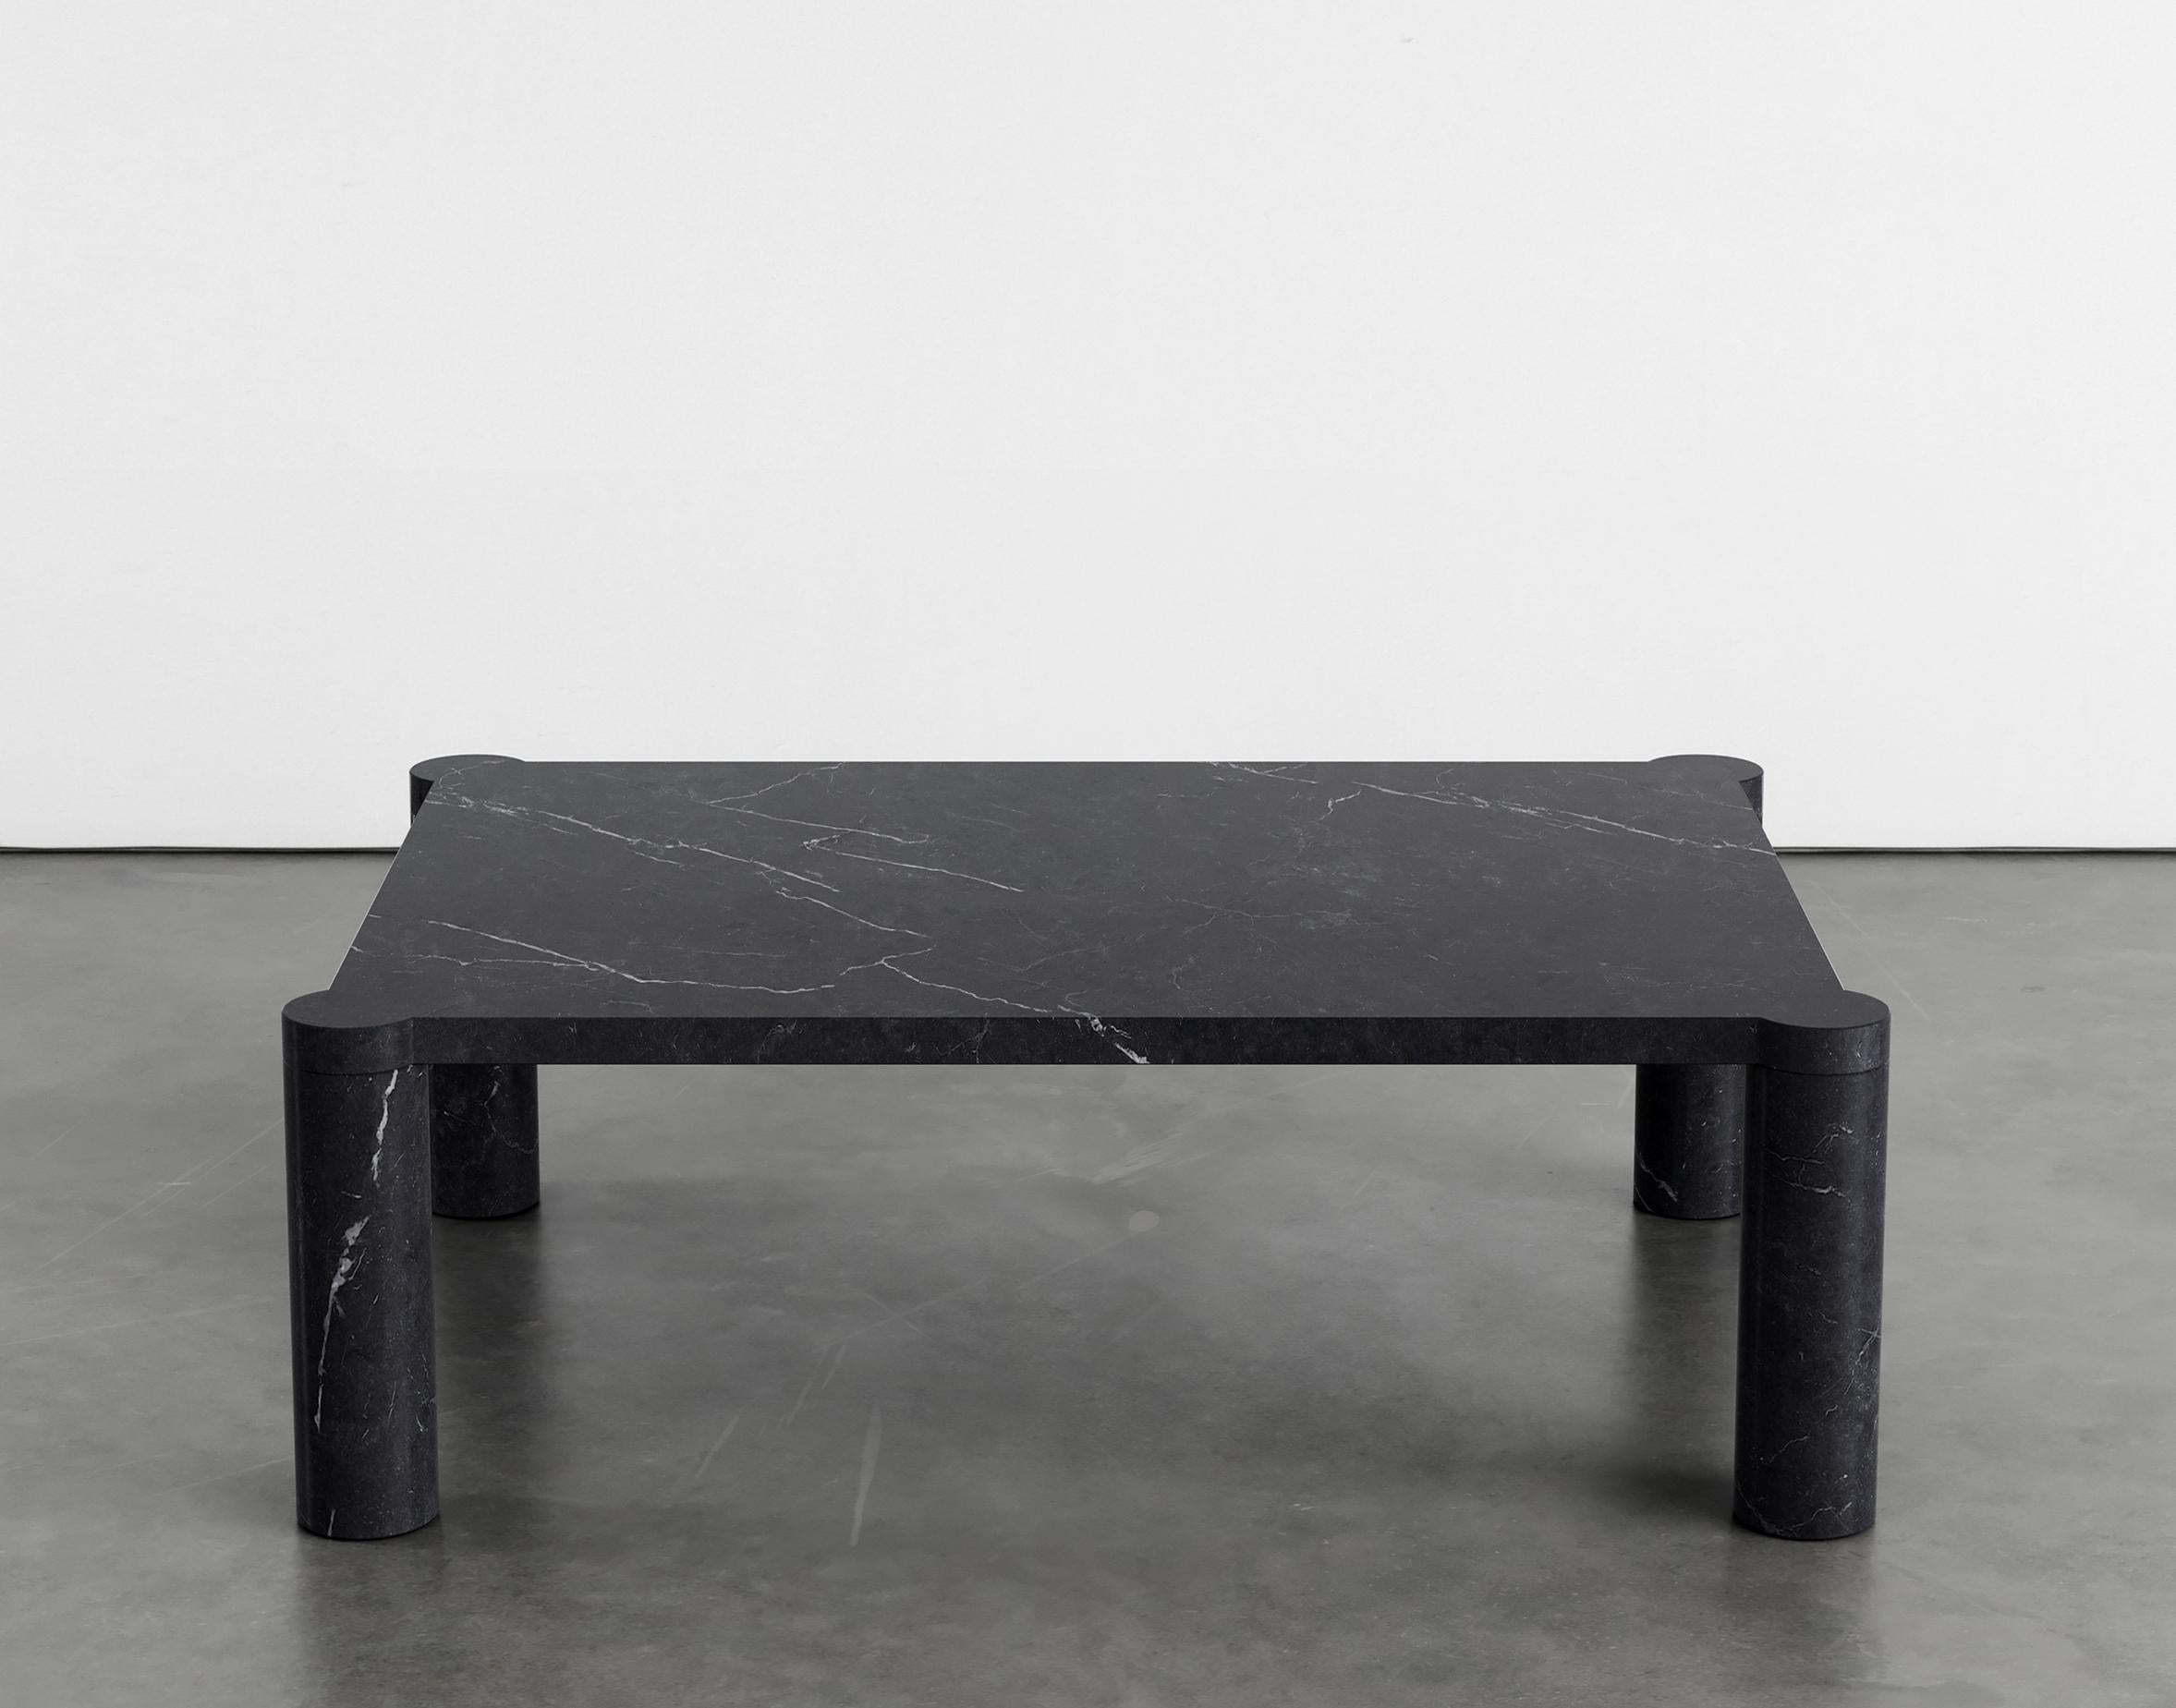 Table basse Alessio 107 par Agglomerati 
Dimensions : D 70 x L 100 x H 33 cm 
Matériaux : Marquina noir. Disponible dans d'autres pierres. 

Agglomerati est un studio basé à Londres qui crée des meubles en pierre distinctifs. Fondé en 2019 par